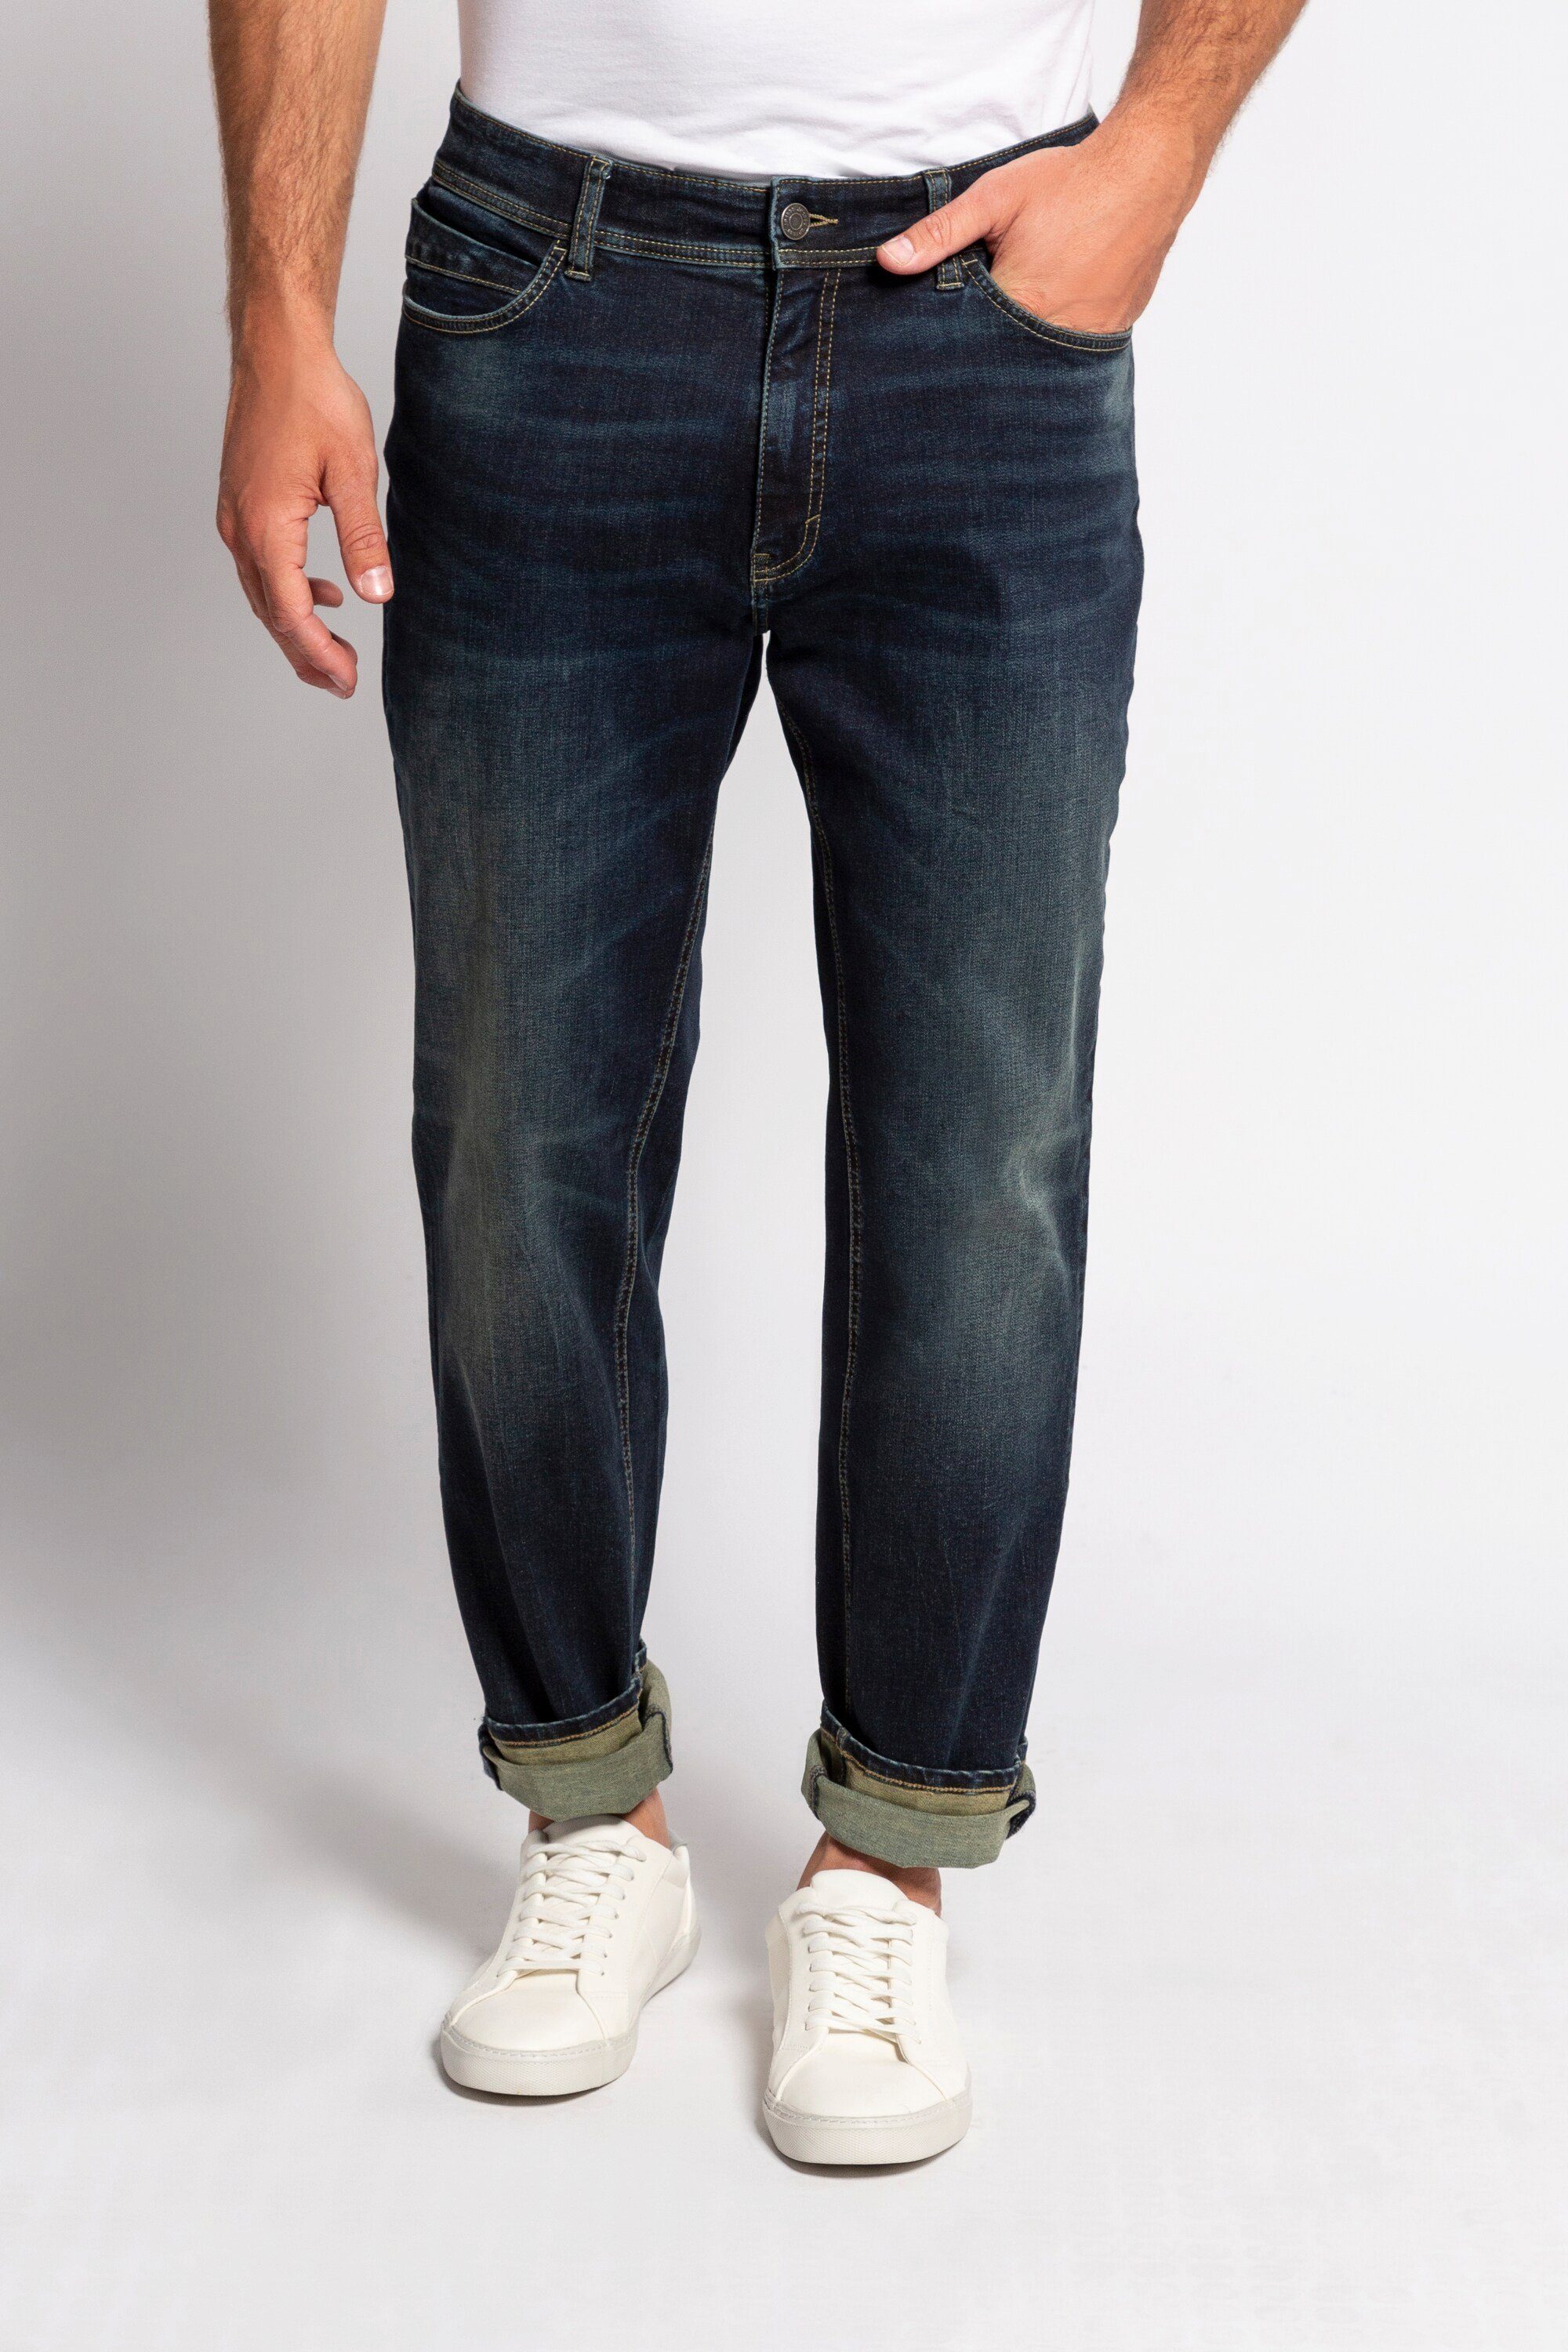 Herren Hosen JP1880 Cargohose Jeans FLEXNAMIC® 5-Pocket Tapered Loose Fit